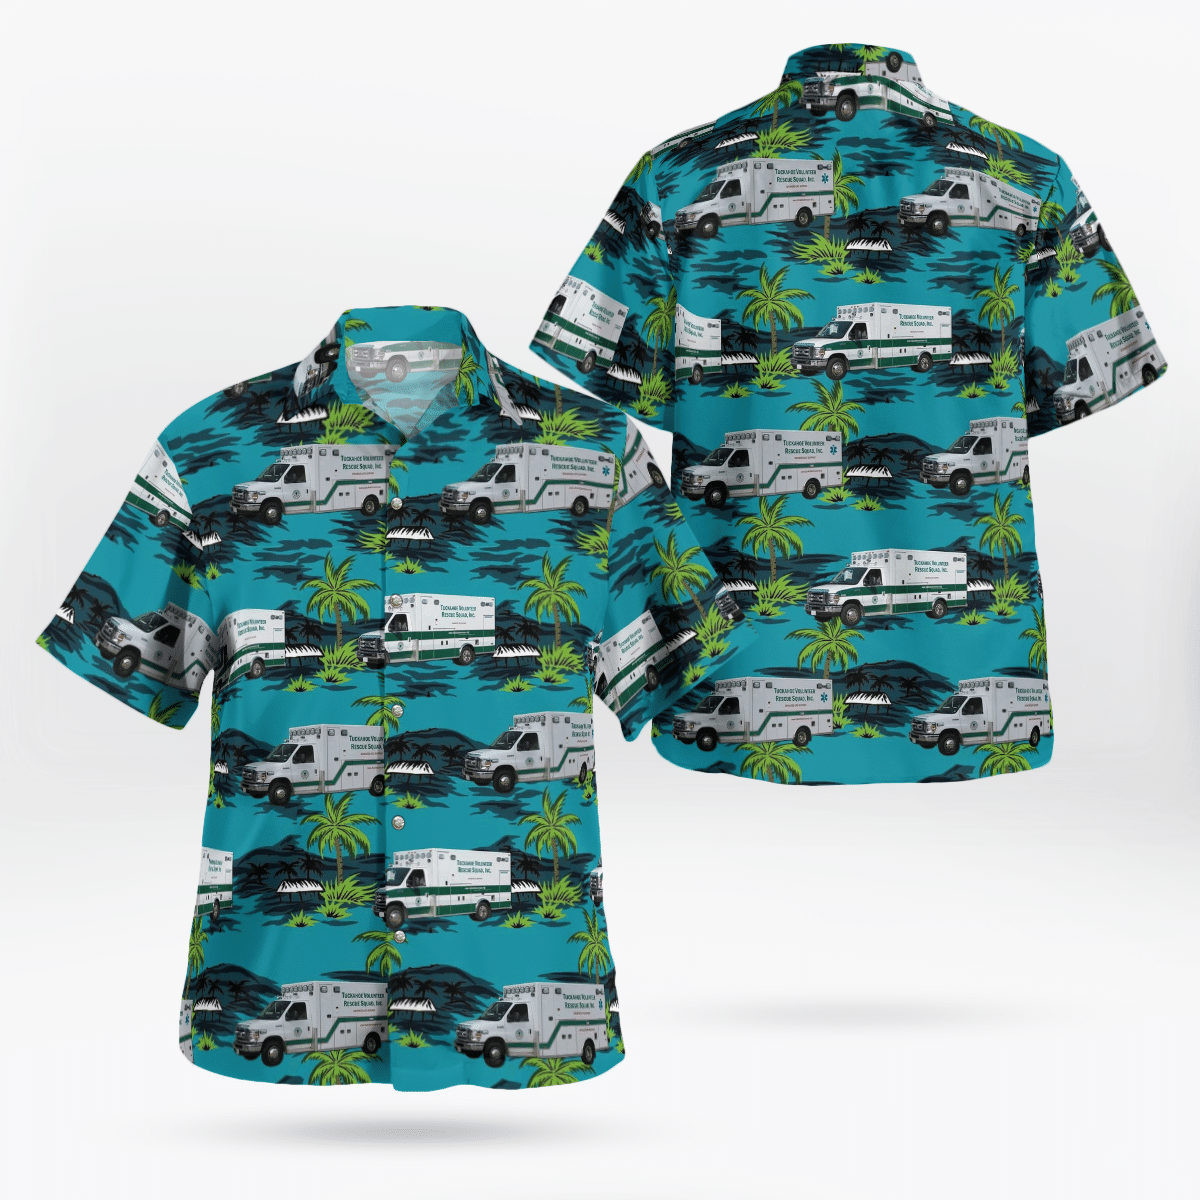 Best Hawaiian shirts 2022 240